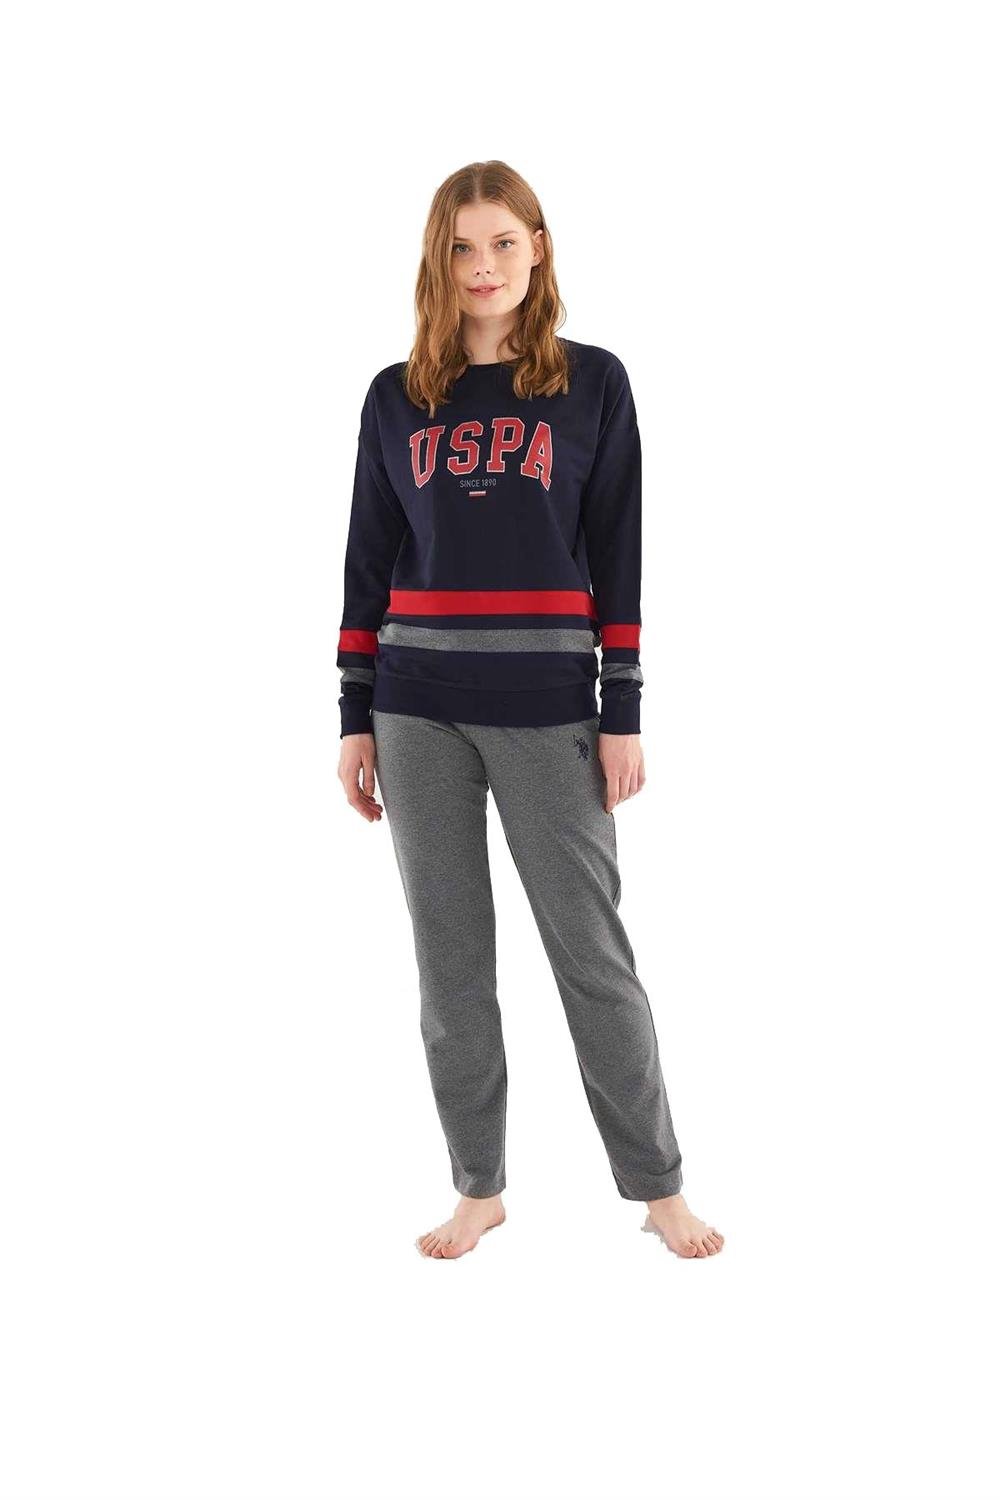 U.S. Polo Assn Kadın Uzun Kollu Lacivert Pijama Takımı 16802 | Black Online